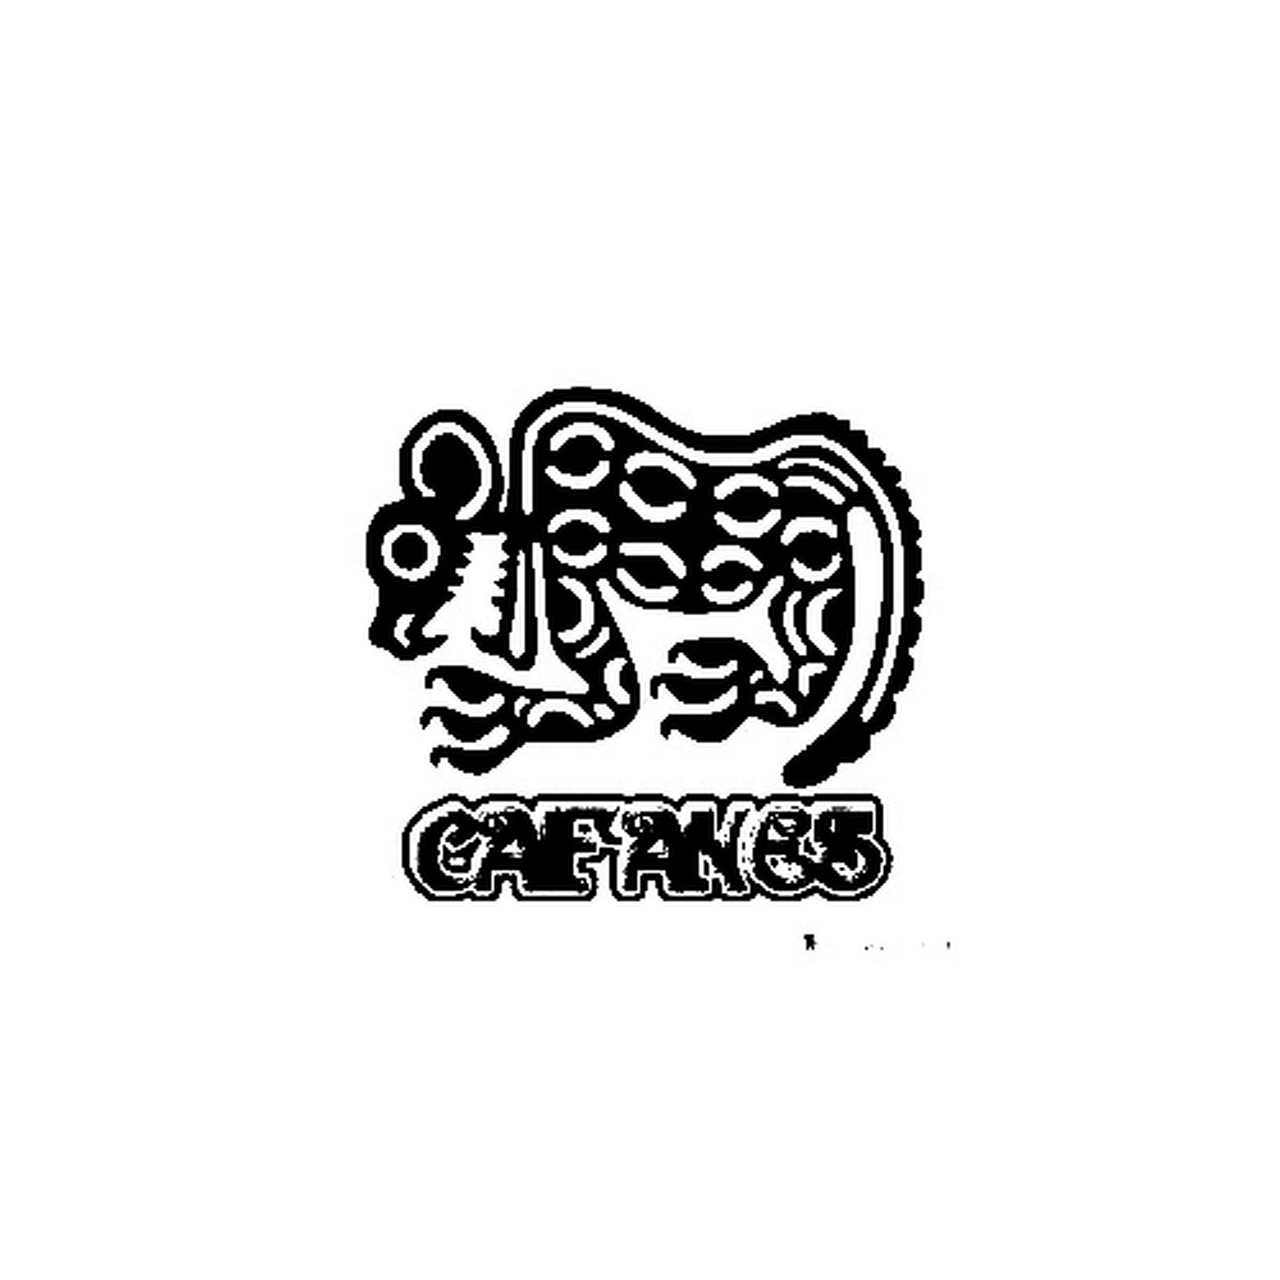 Caifanes Band Logo Vinyl Sticker.